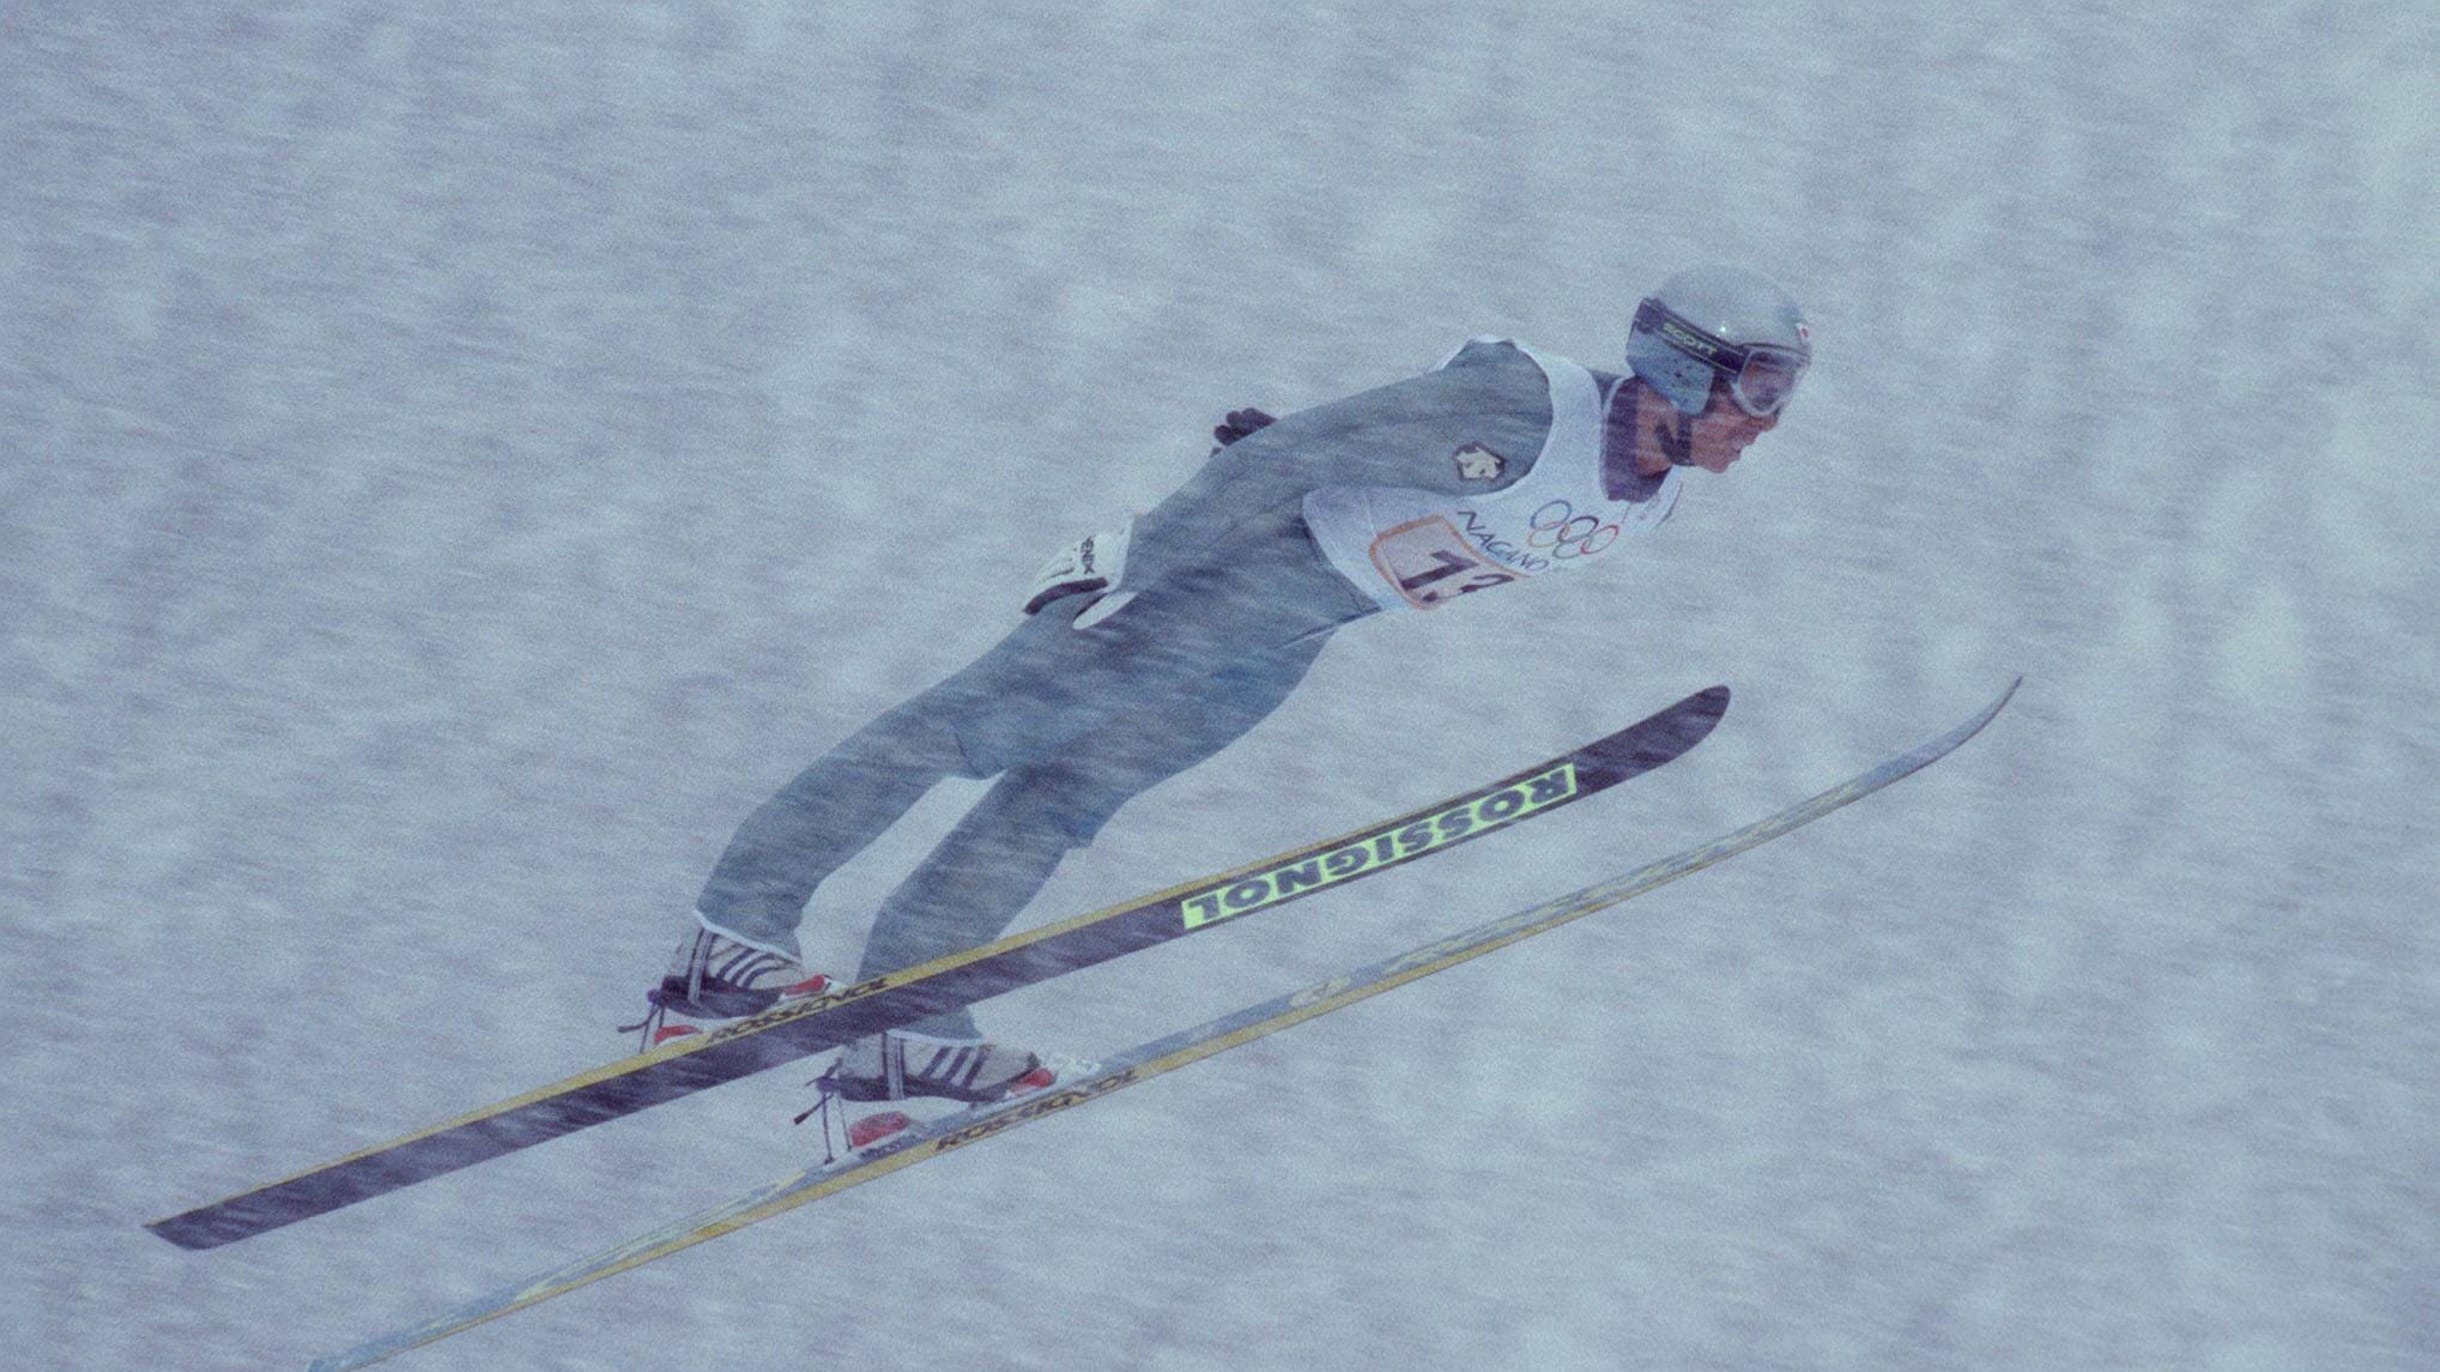 An Olympian explains How to master Ski Jumping with HARADA Masahiko